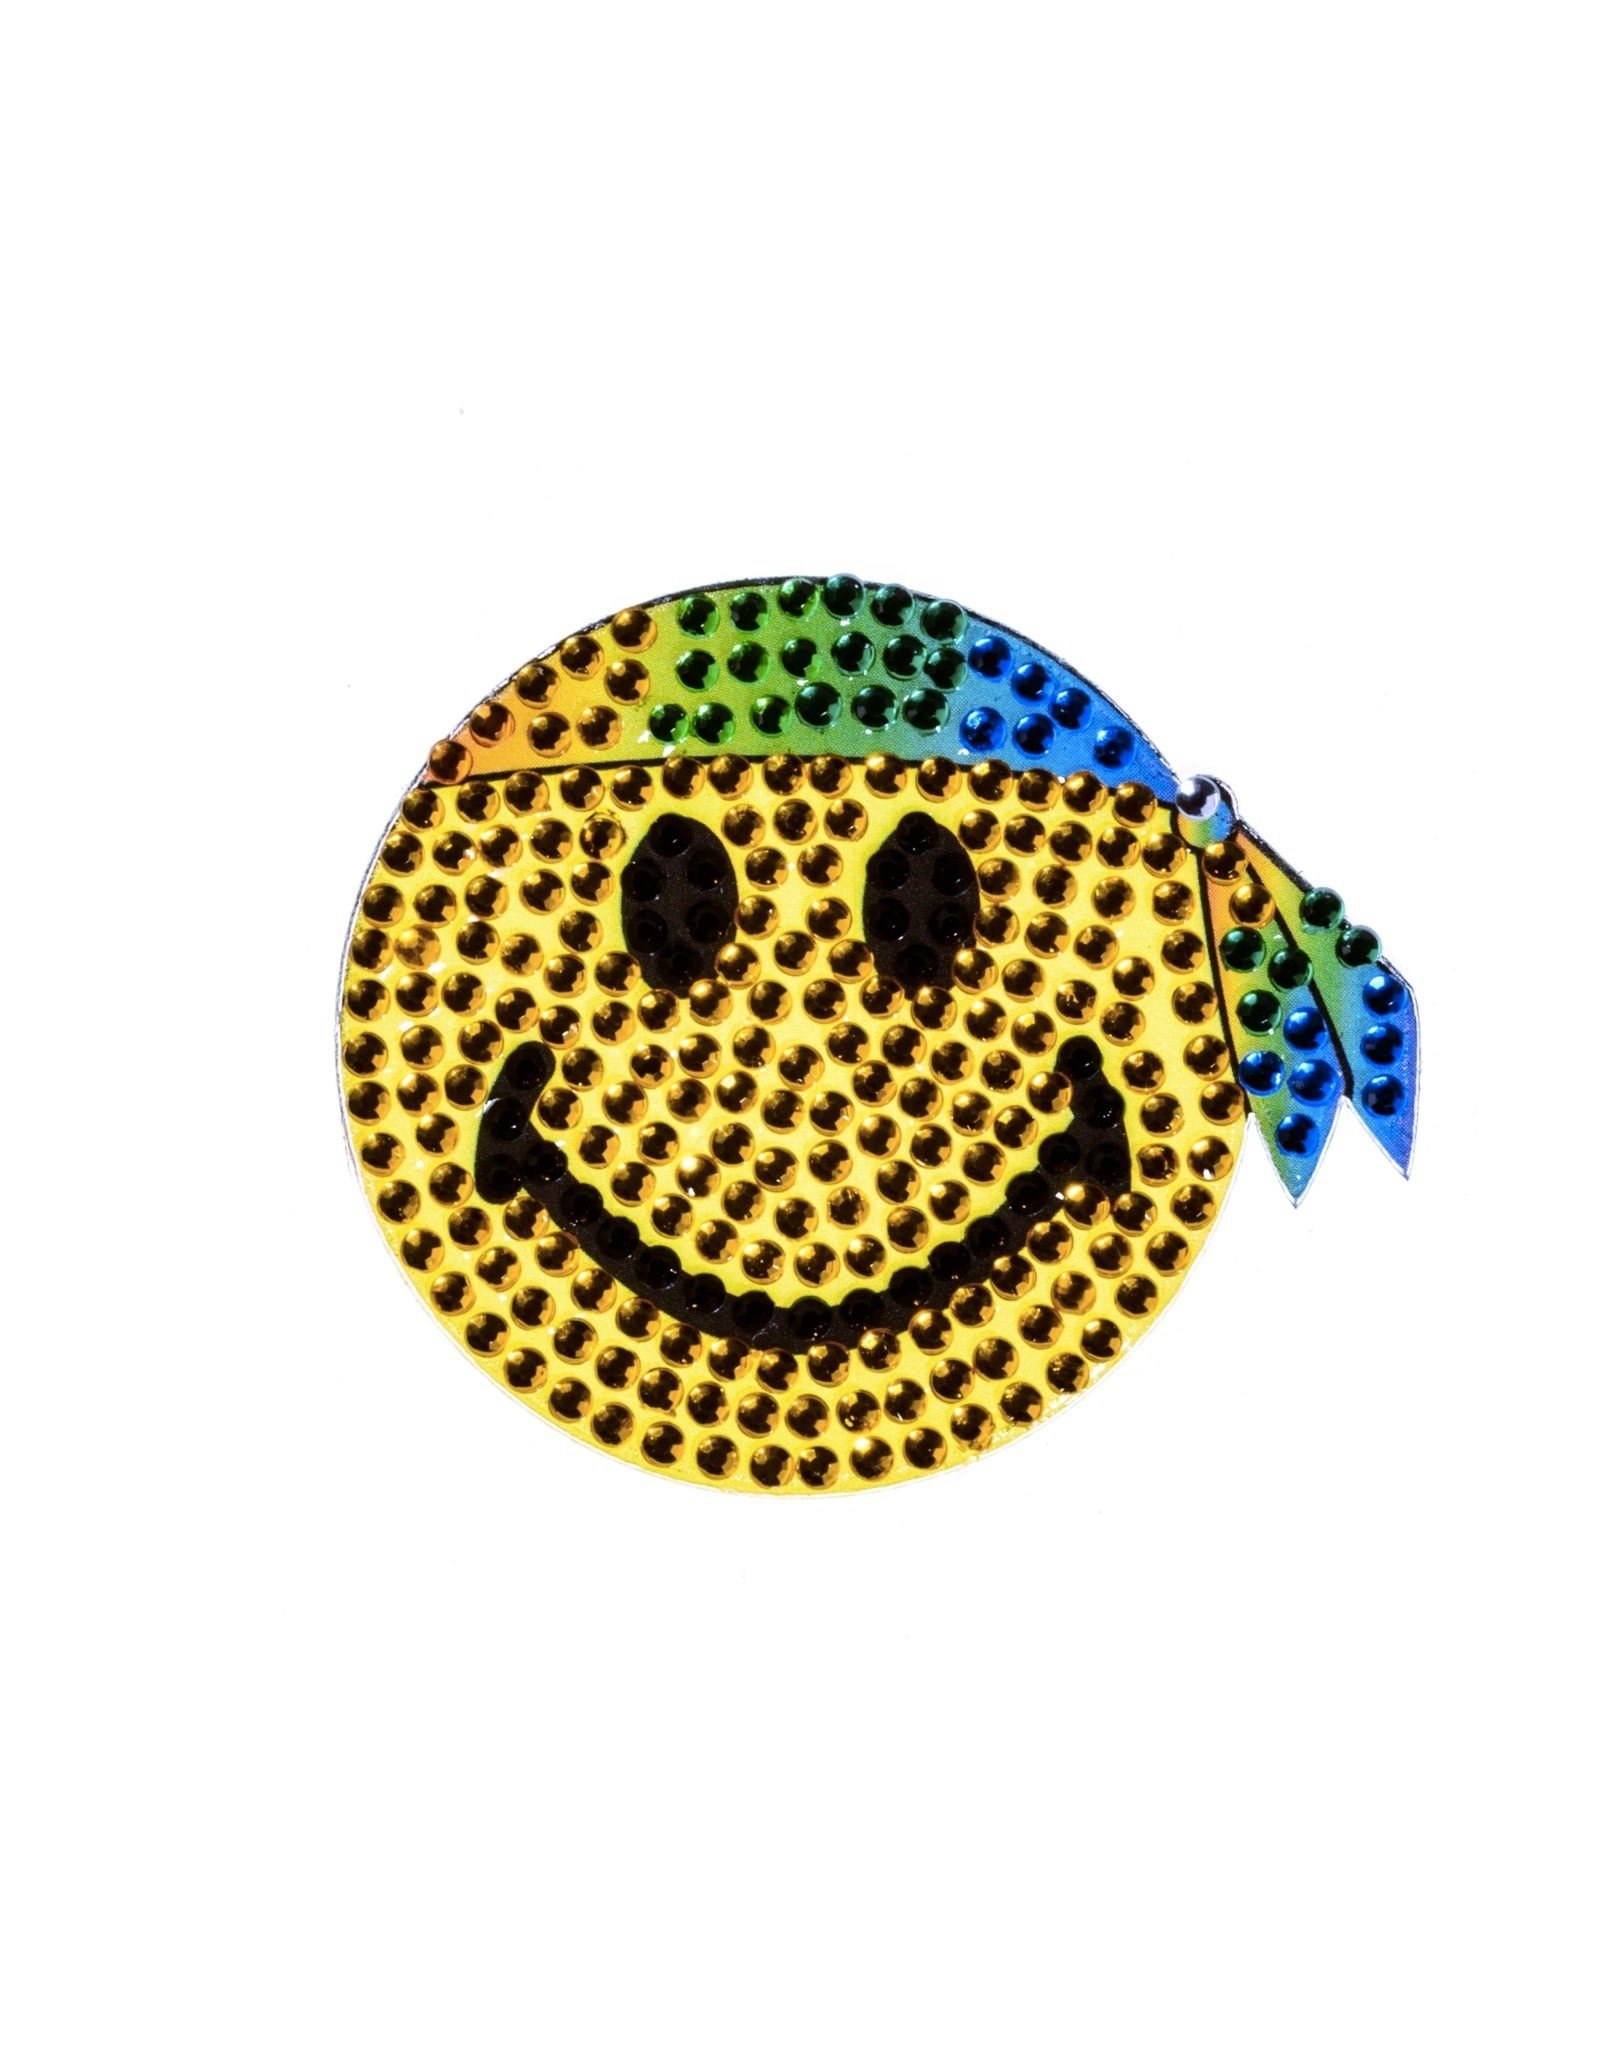 Sticker Beans Hippie Smiley